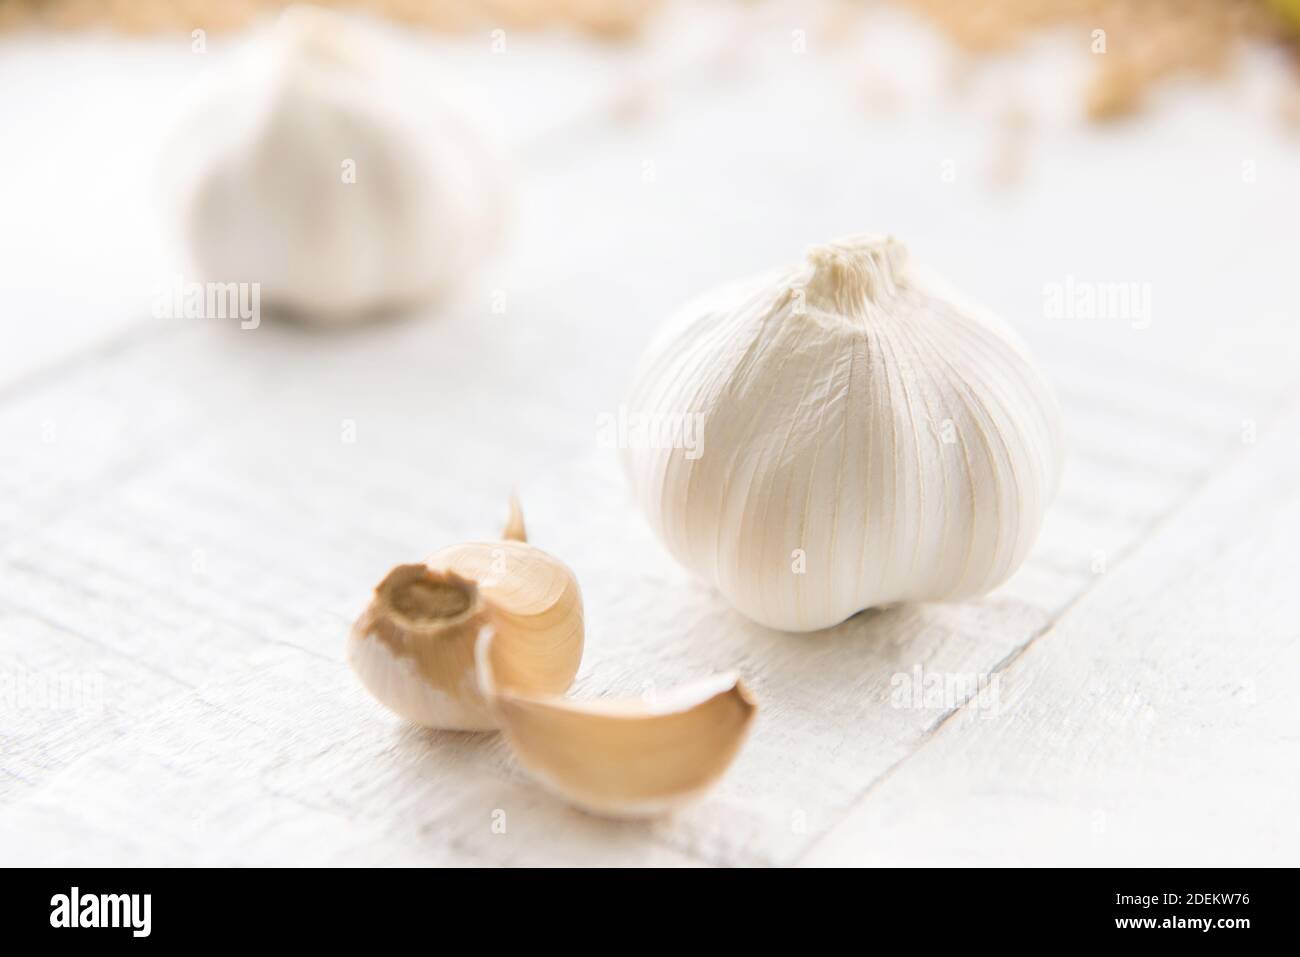 Los bulbos de ajo herbario sano hermoso y los clavos como especia y.. ingrediente de cocina sobre mesa de madera blanca Foto de stock